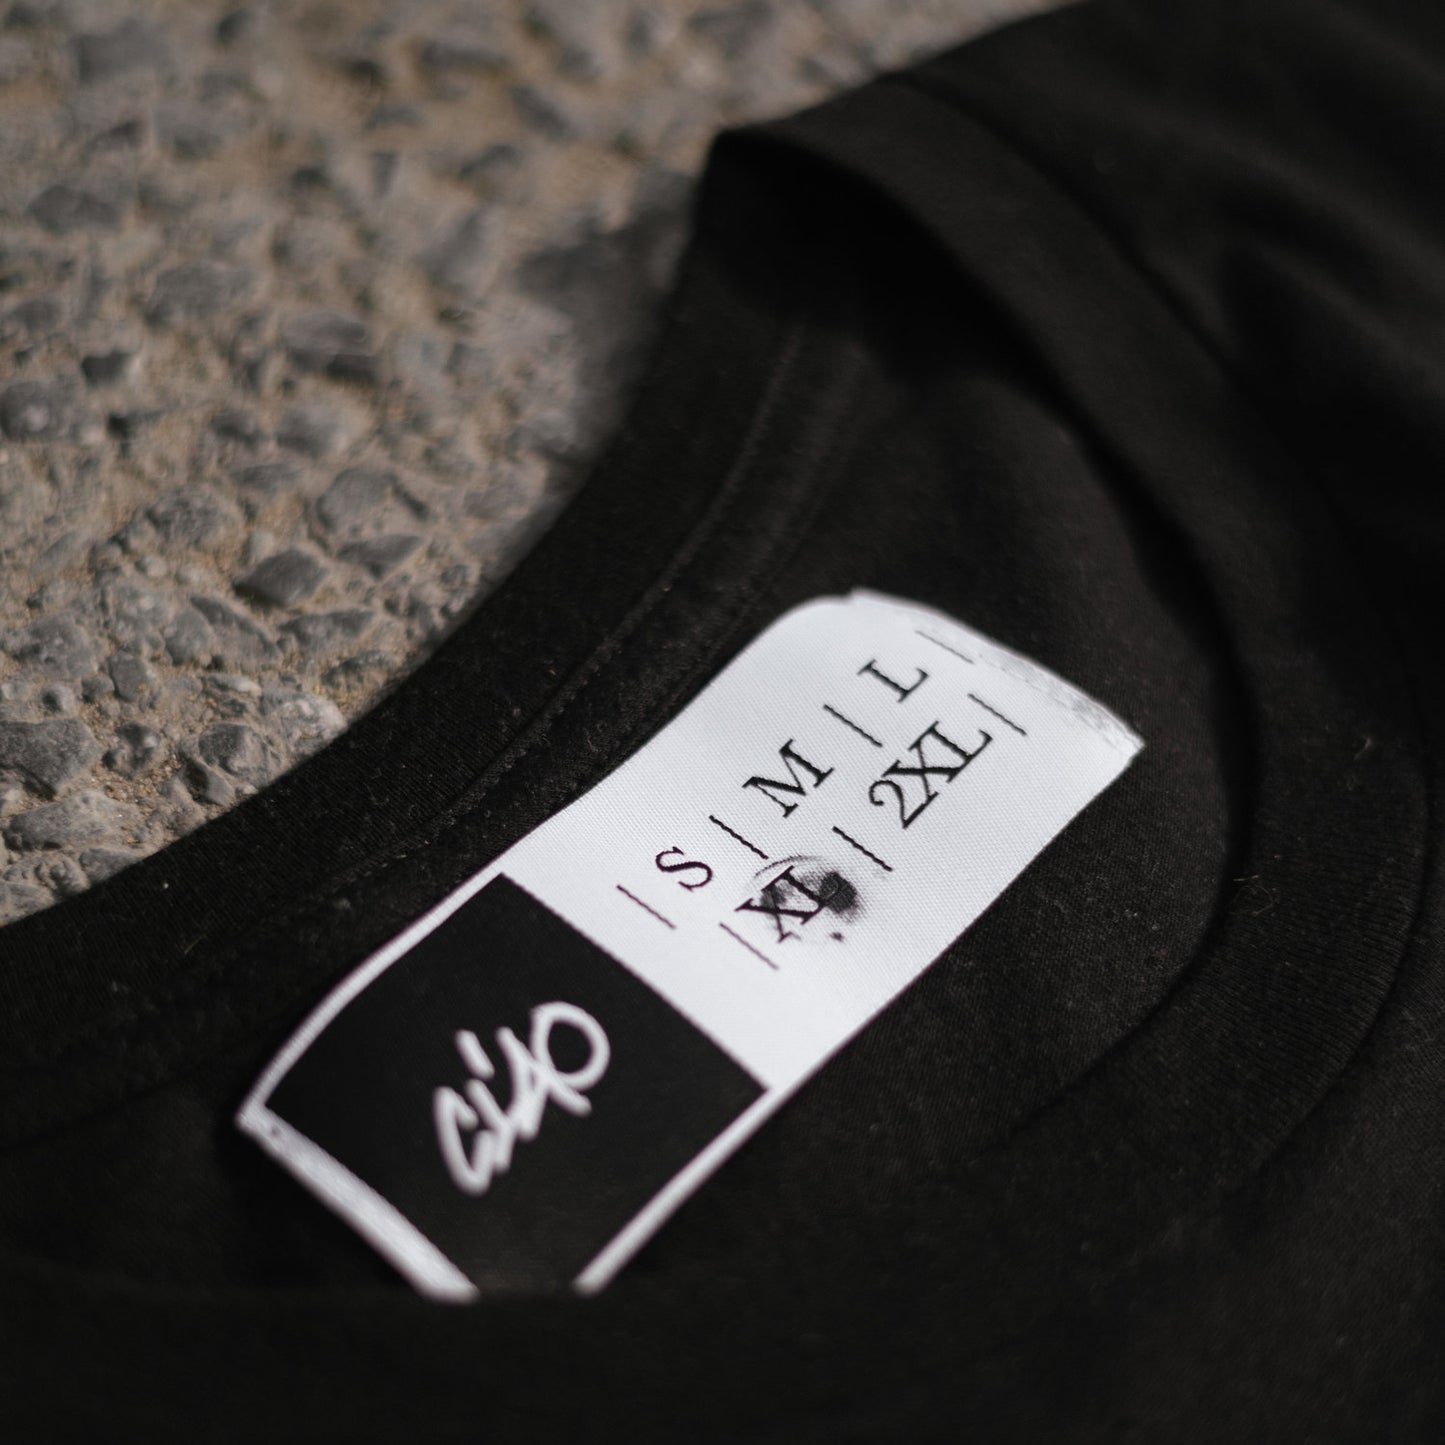 CIAO - MMXV T-Shirt/Black